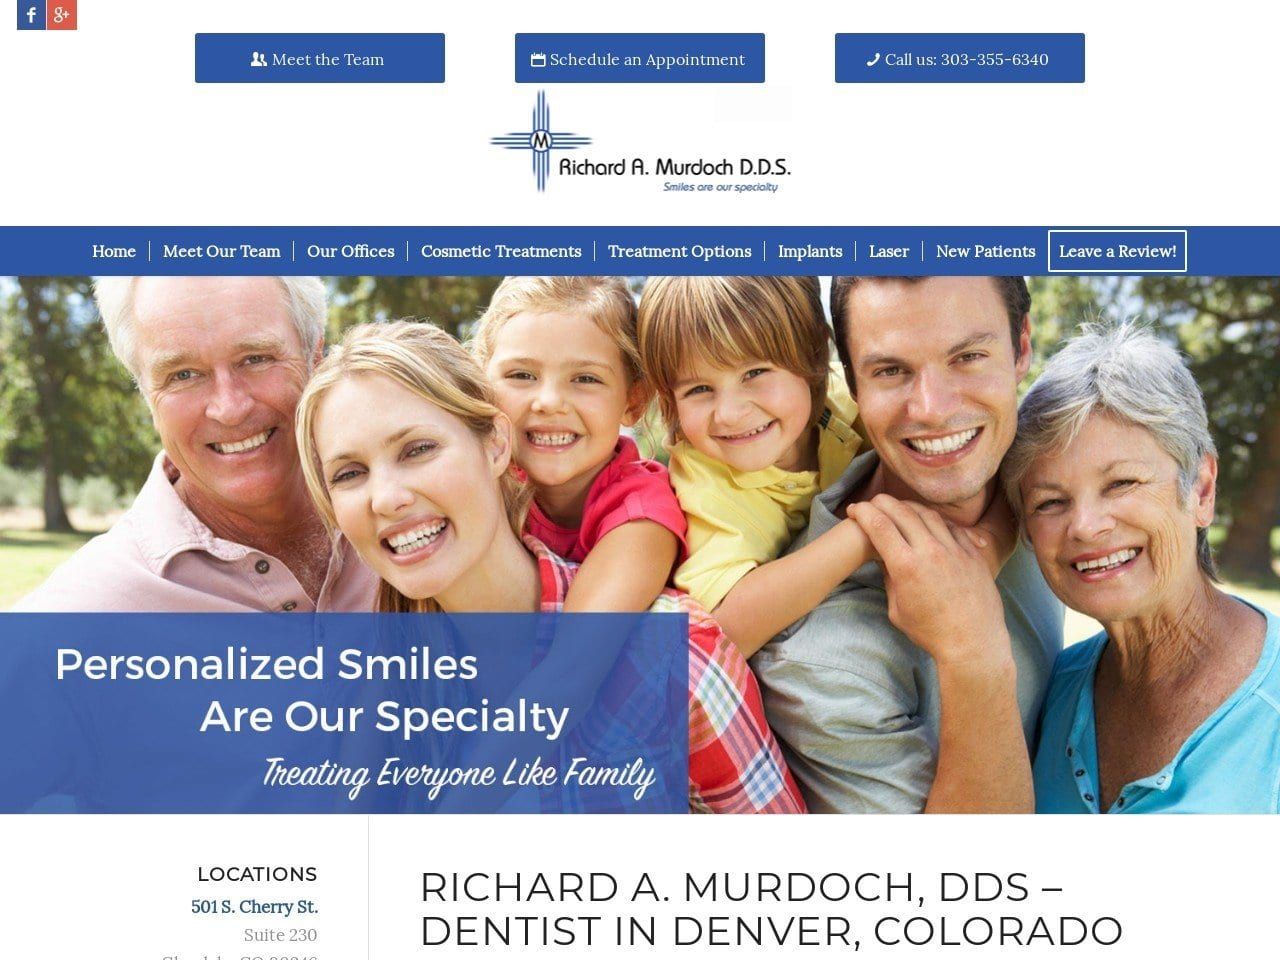 Richard A. Murdoch D.D.S. P.C. Website Screenshot from murdochdds.com